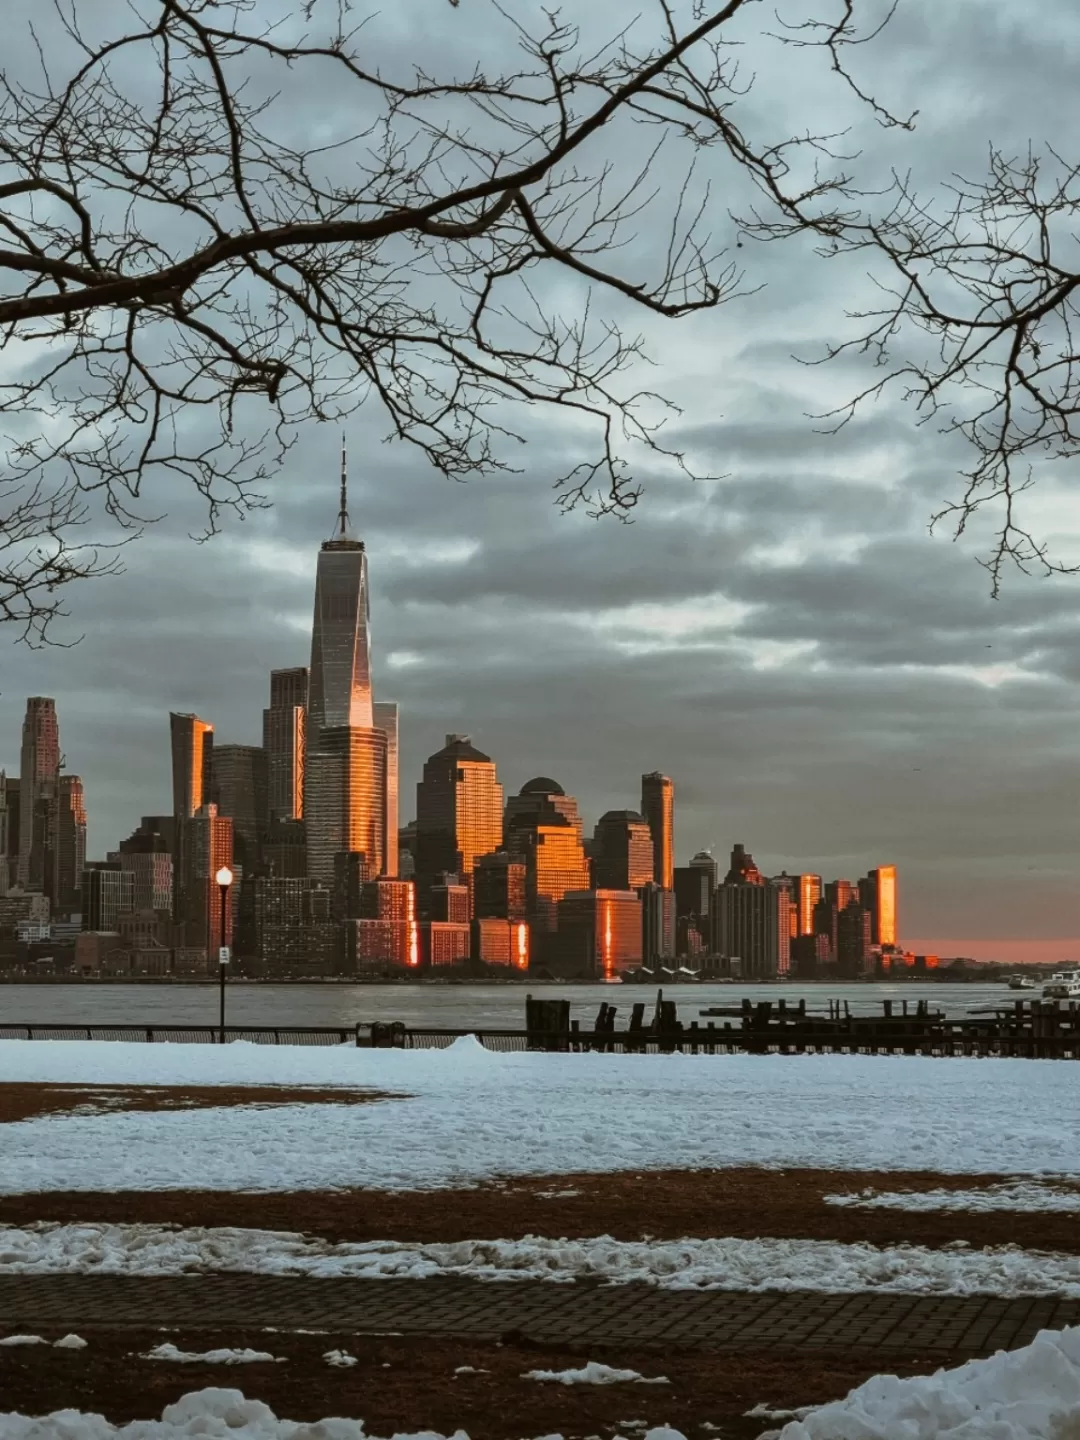 Photo of New York By nishant jhamb